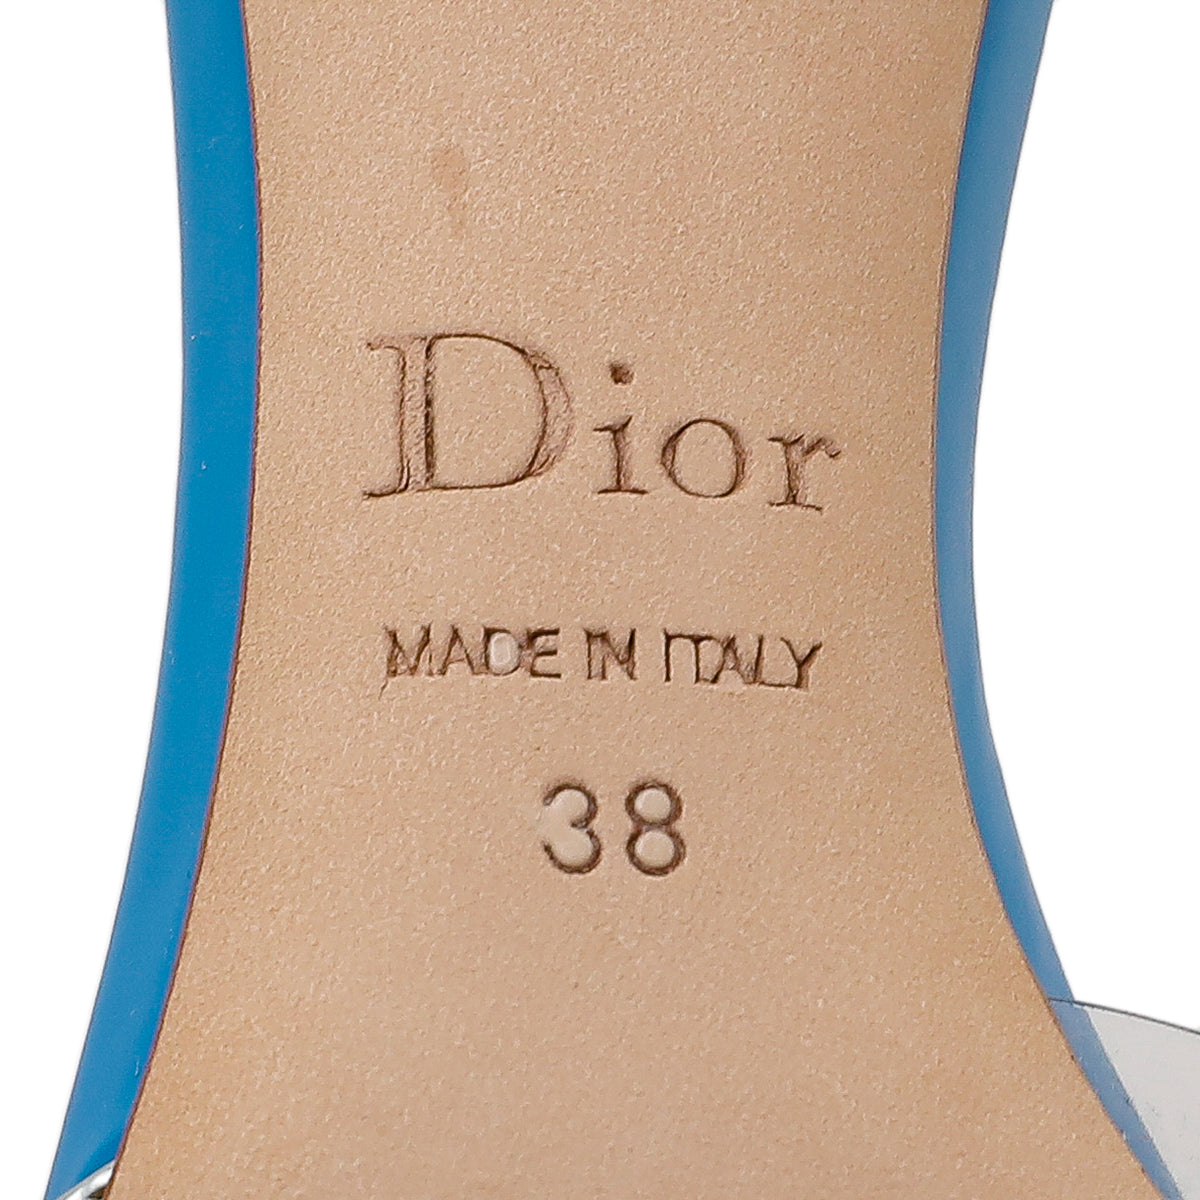 Christian Dior Bicolor D'orsay Pumps 38